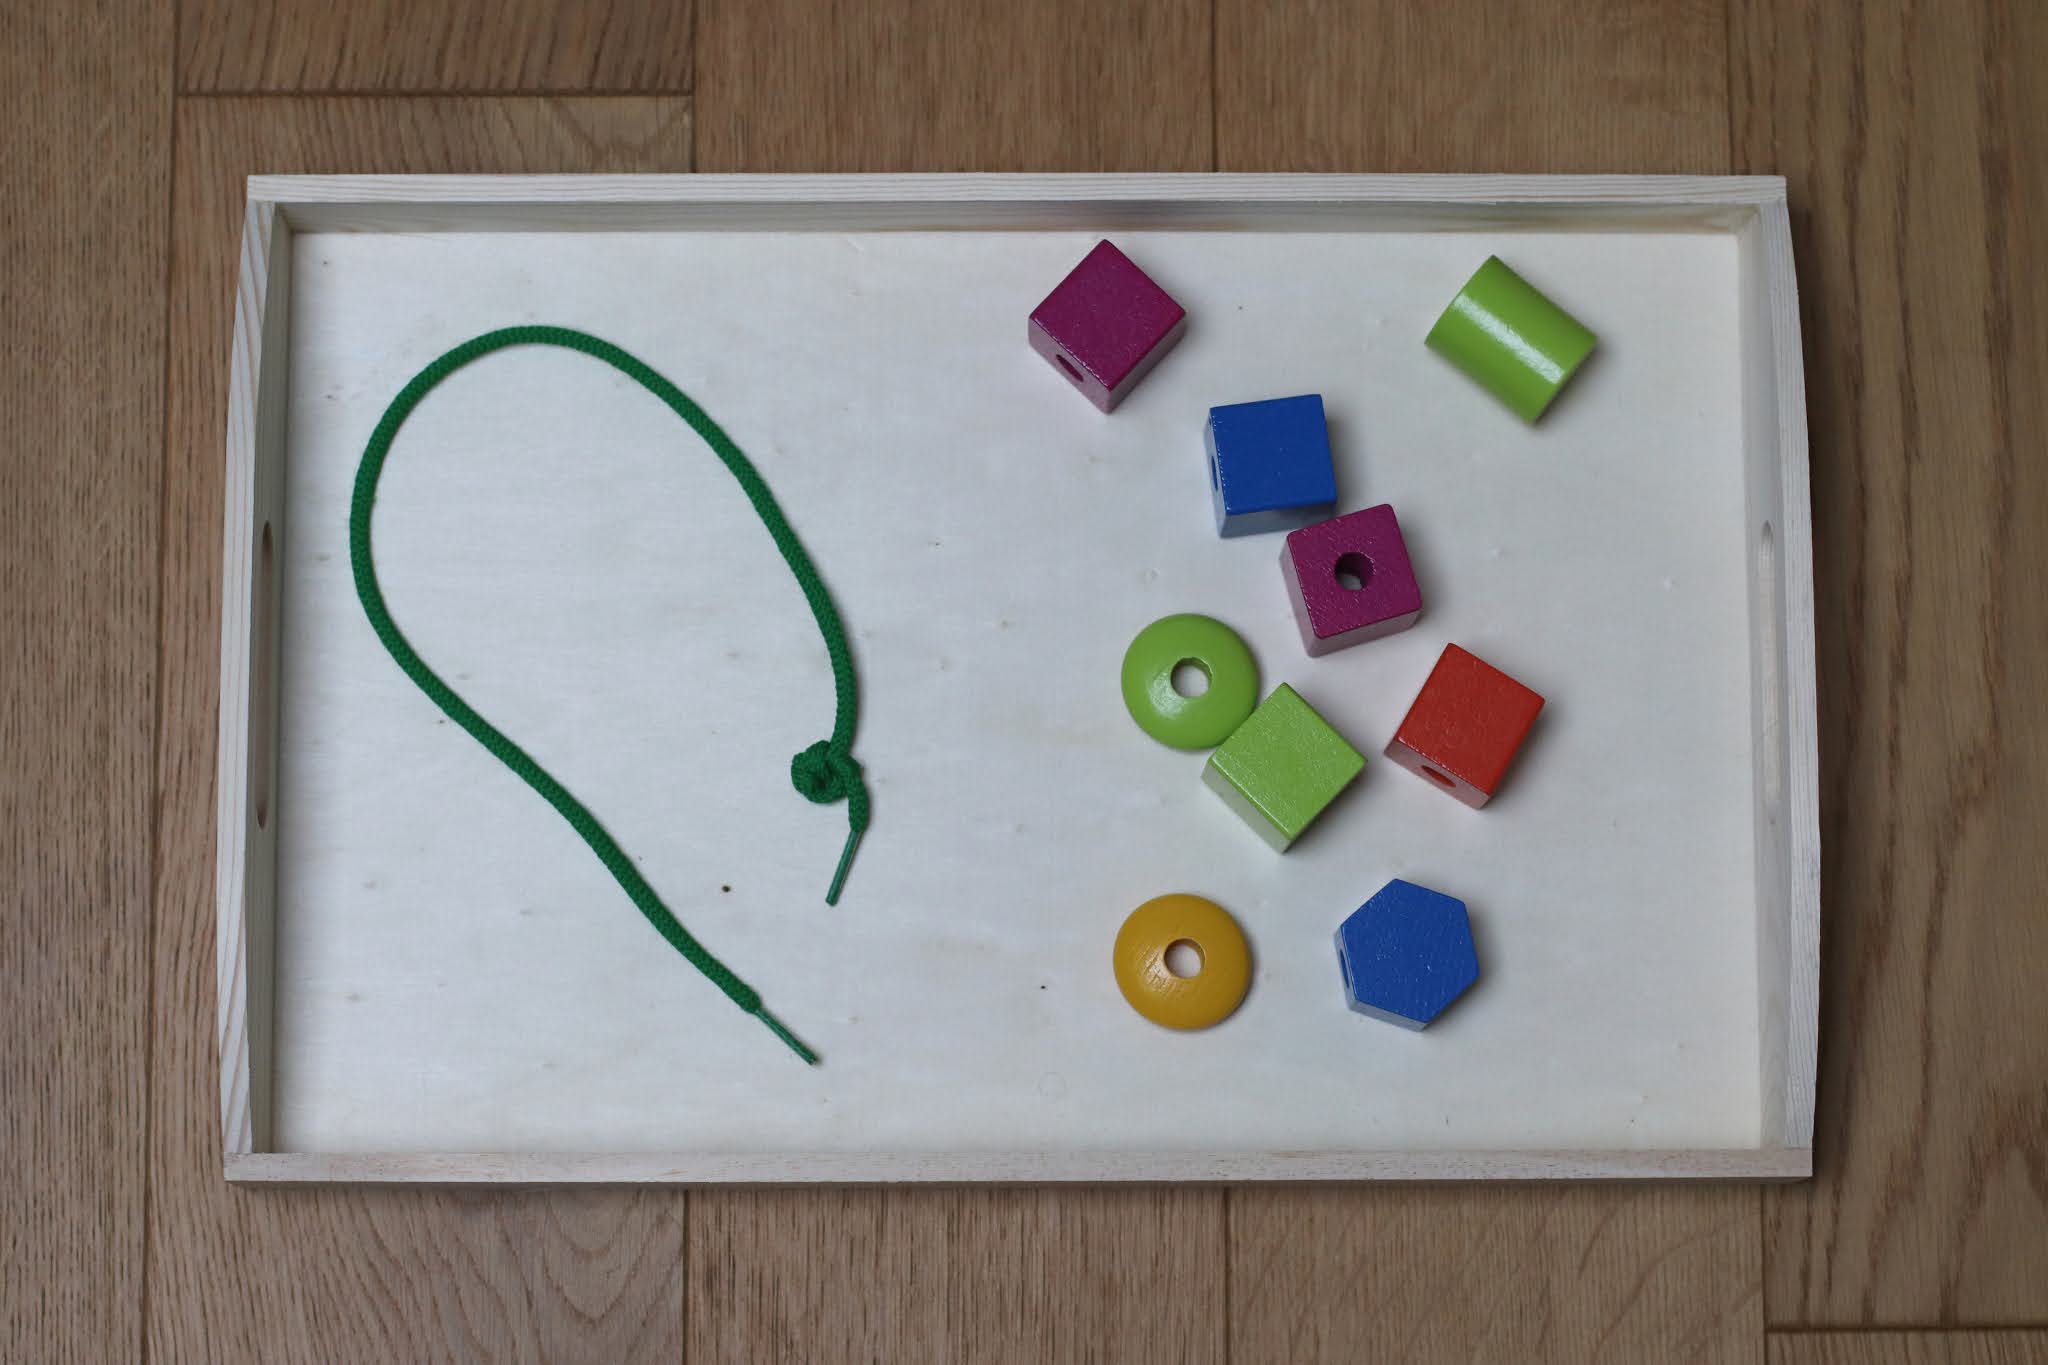 5 activités d'inspirations Montessori à proposer à vos enfants (1-2 ans) -  Le bazar d'Alison - Blog Lifestyle, Zéro Déchet et Kids